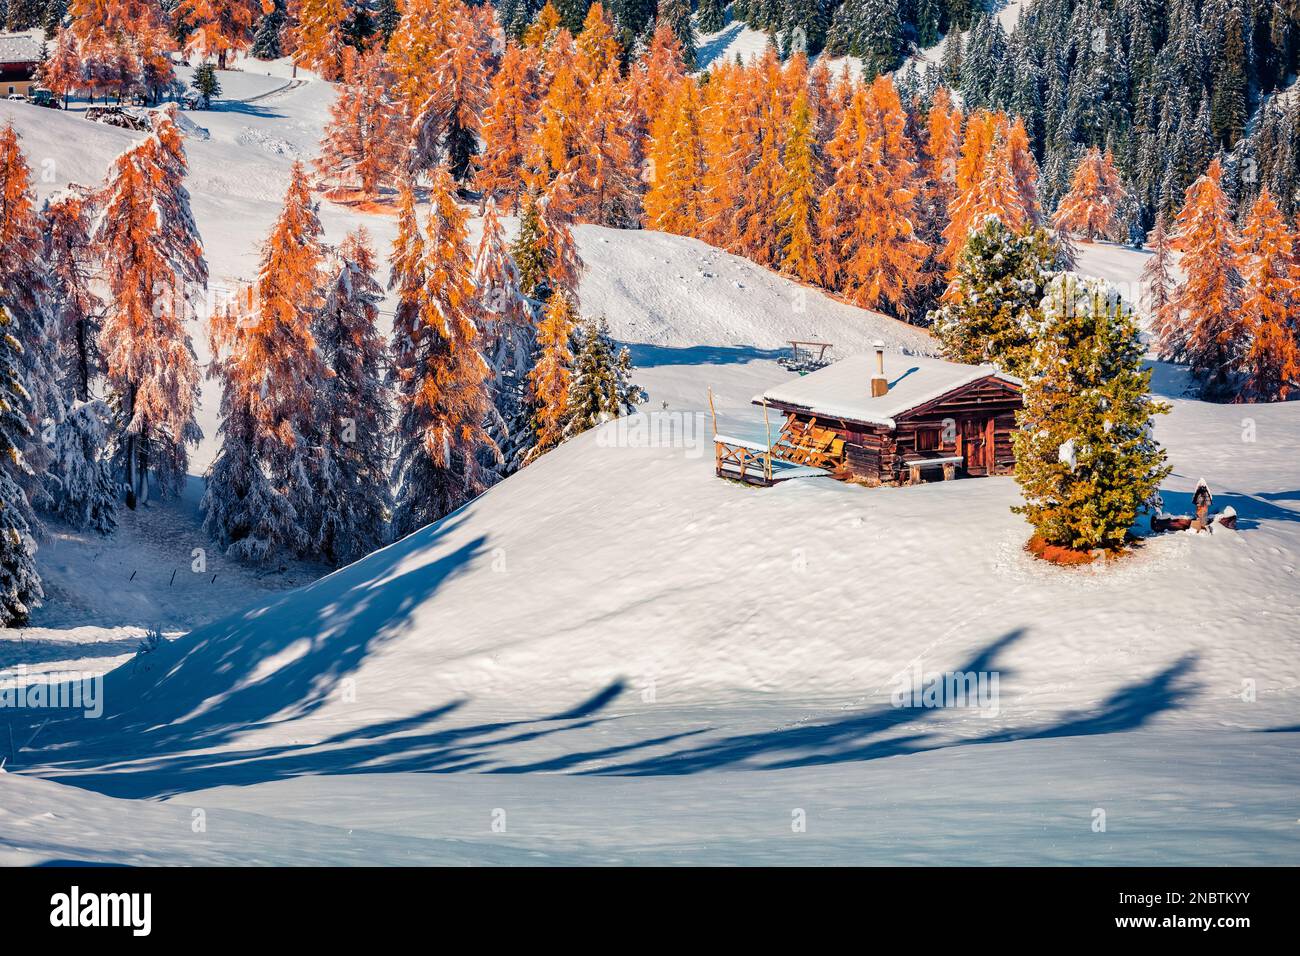 Première neige à Alpe di Siusi village.Chalet en bois parmi les trres de mélèze rouge. Magnifique vue d'hiver sur les Alpes Dolomites. Scène enneigée du matin d'Ityaly, EUR Banque D'Images